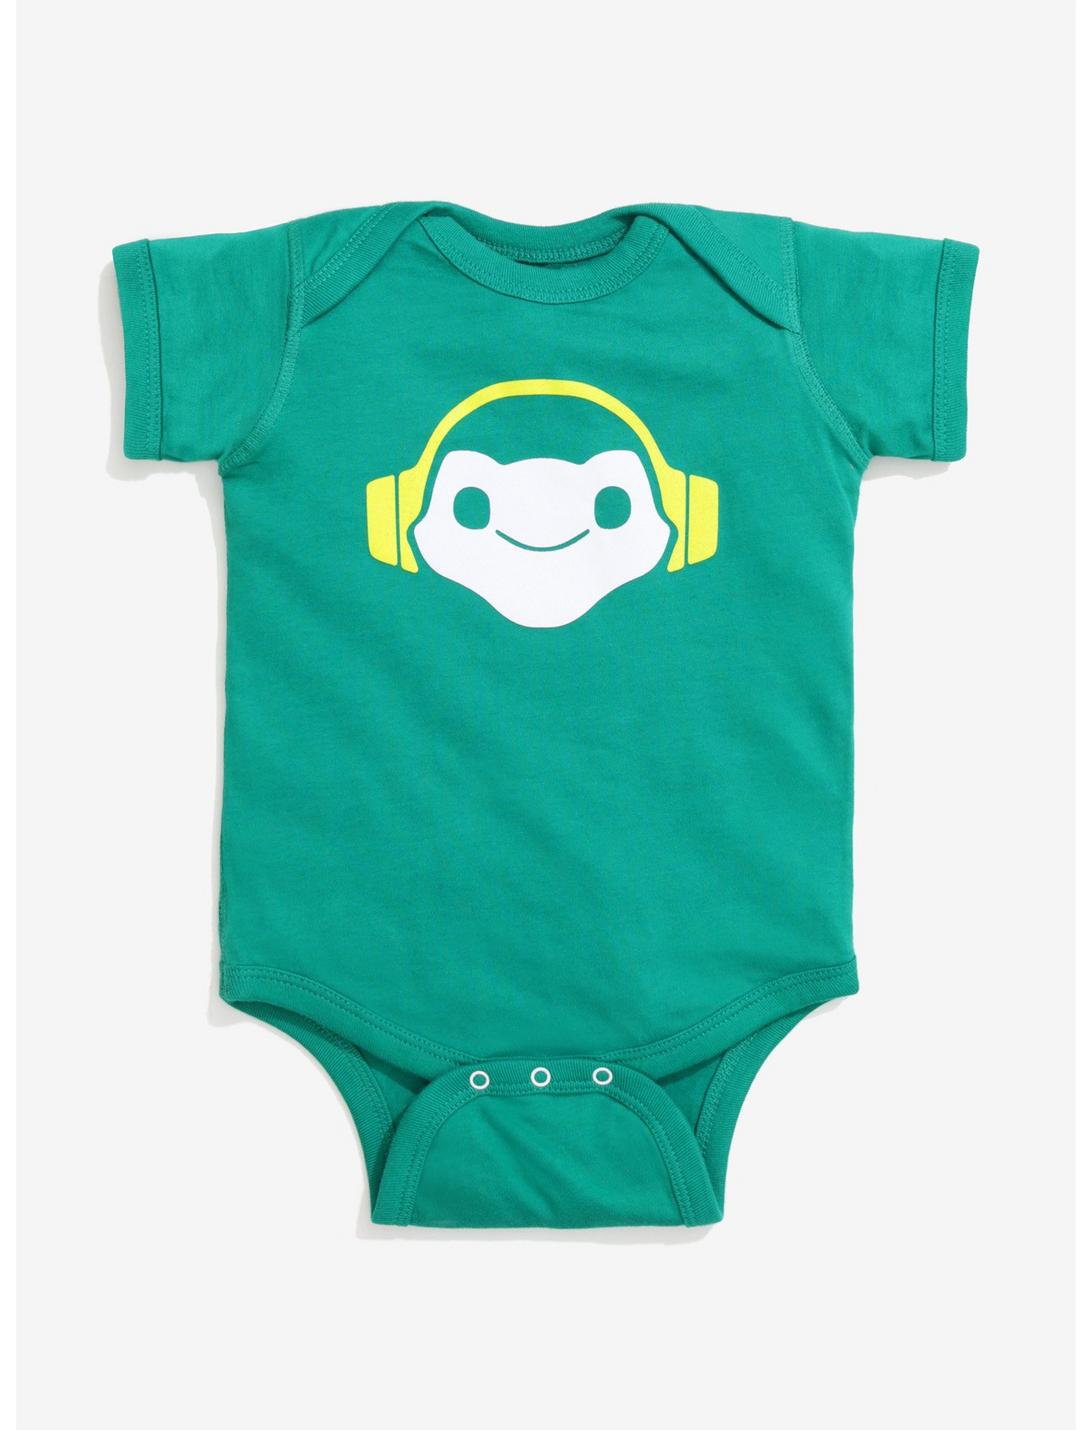 Overwatch Lucio Baby Bodysuit, GREEN, hi-res